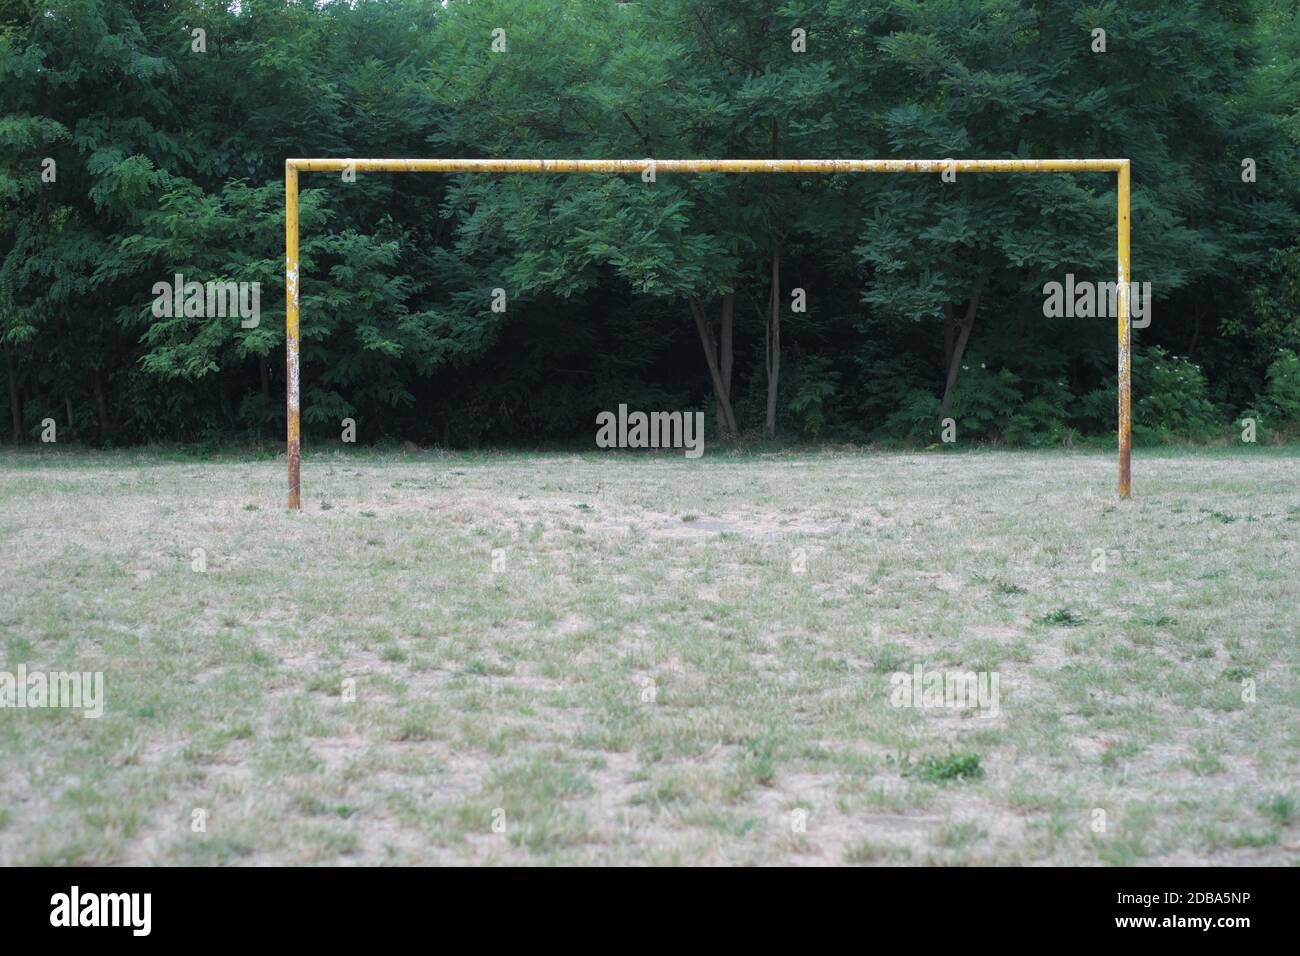 Football goal nostalgic Stock Photo